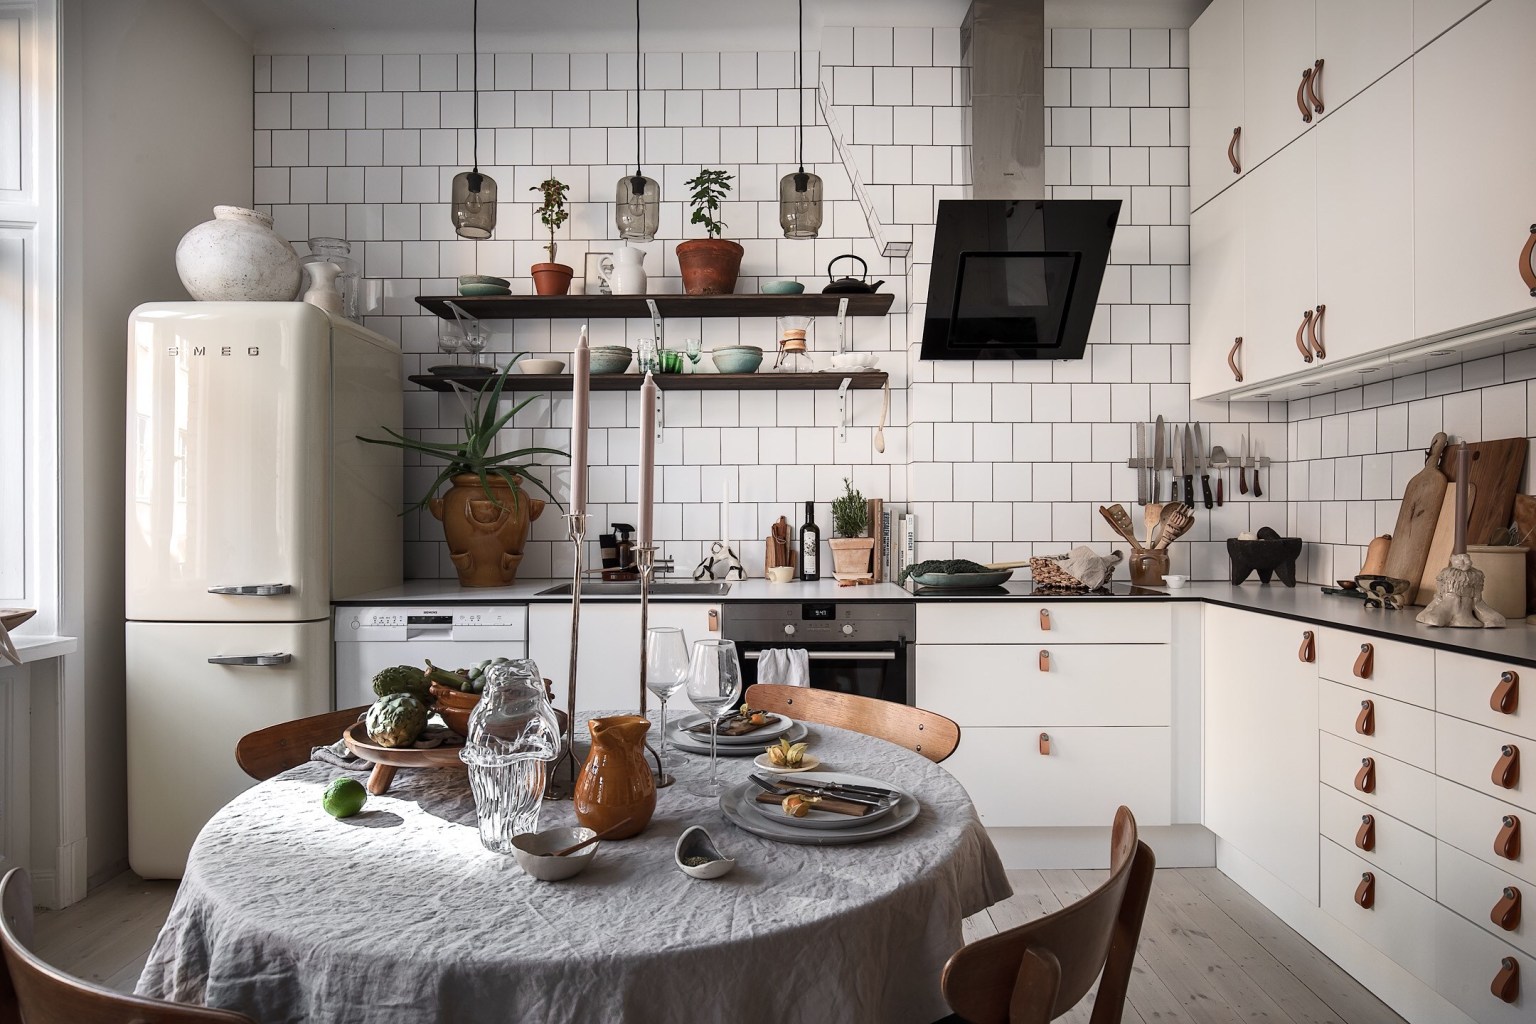  Căn bếp nhỏ đầy đủ nội thất, vật dụng và lựa chọn màu sắc hợp lý tạo điểm nhấn cho không gian bằng bức tường ốp gạch trắng đẹp mắt.